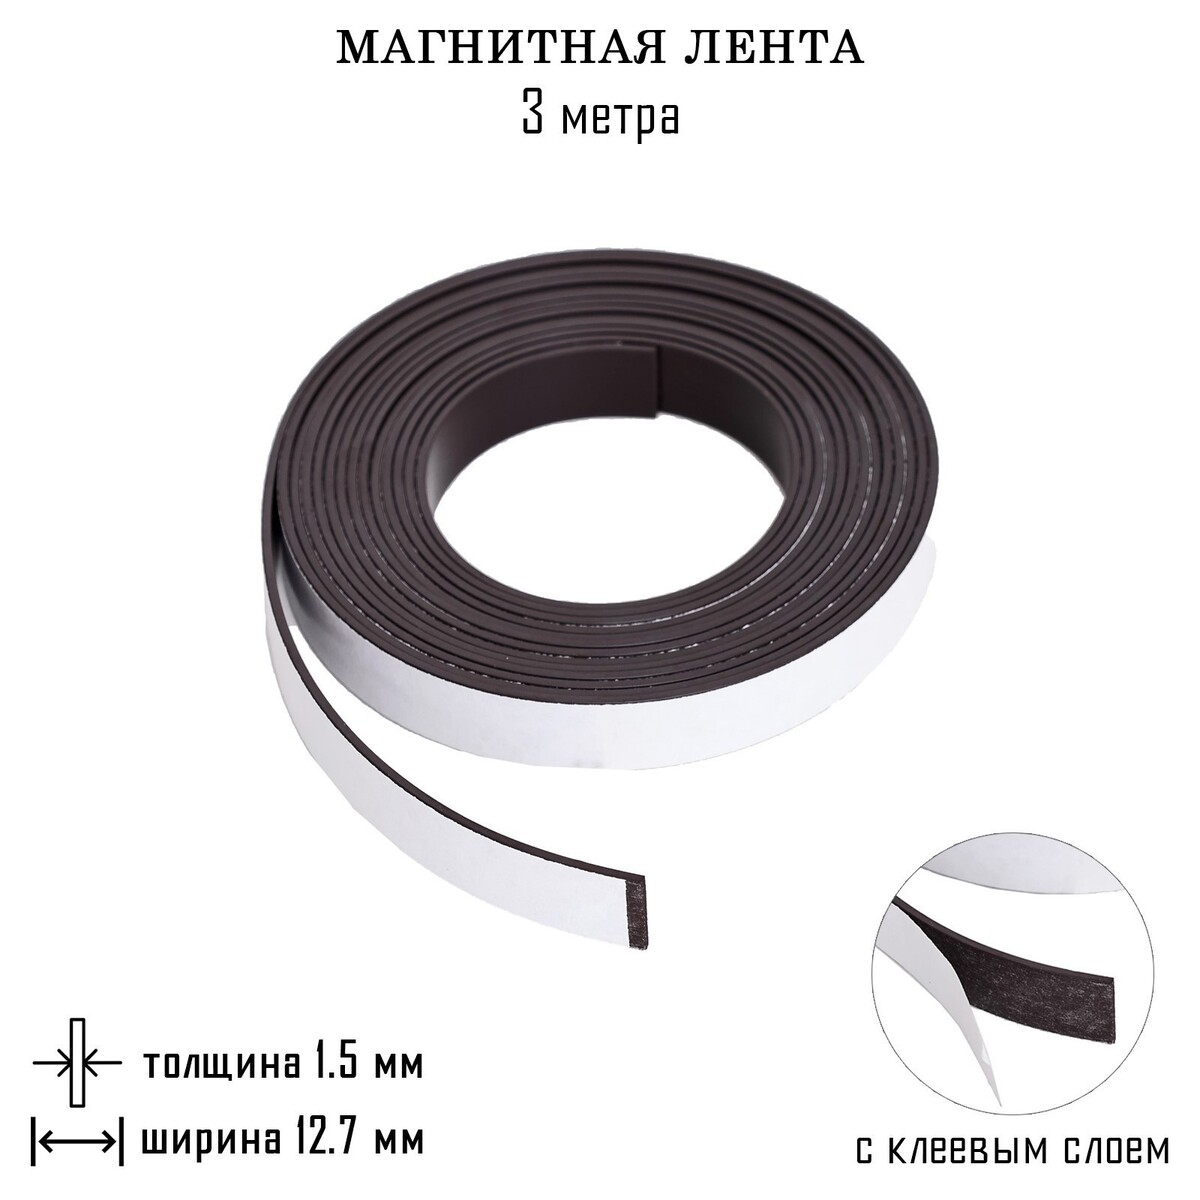 Магнитная лента, с клеевым слоем, 3 метра, толщина 1.5 мм, ширина 12.7 мм магнитная лента с клеевым слоем 3 метра толщина 1 5 мм ширина 12 7 мм